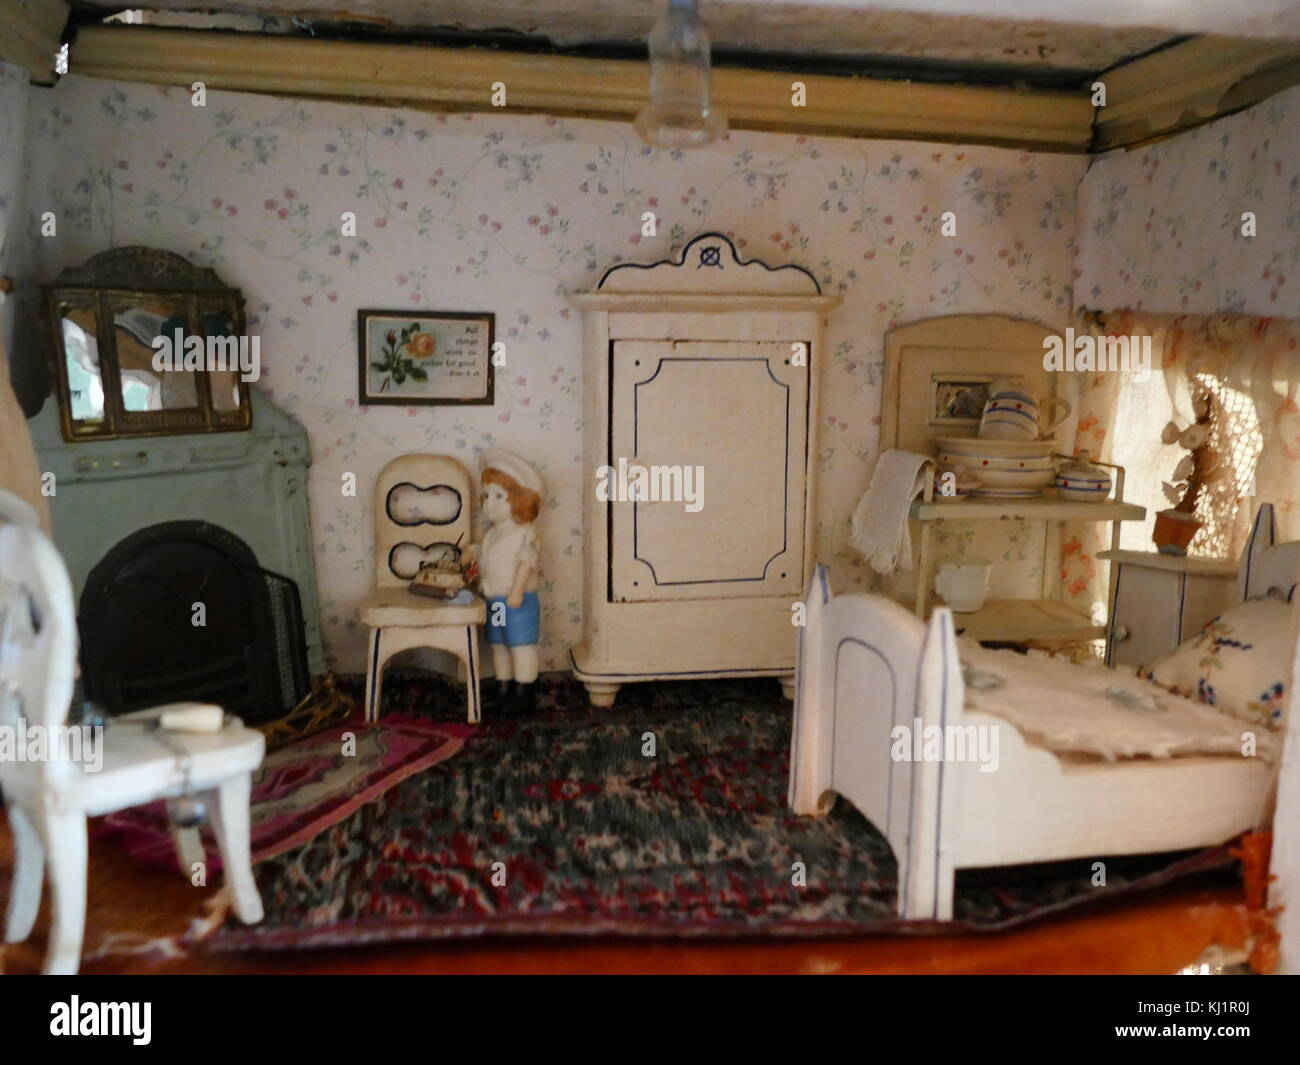 Dormitorio en una casa de muñecas c, que datan de 1900. Fabricante desconocido. Foto de stock